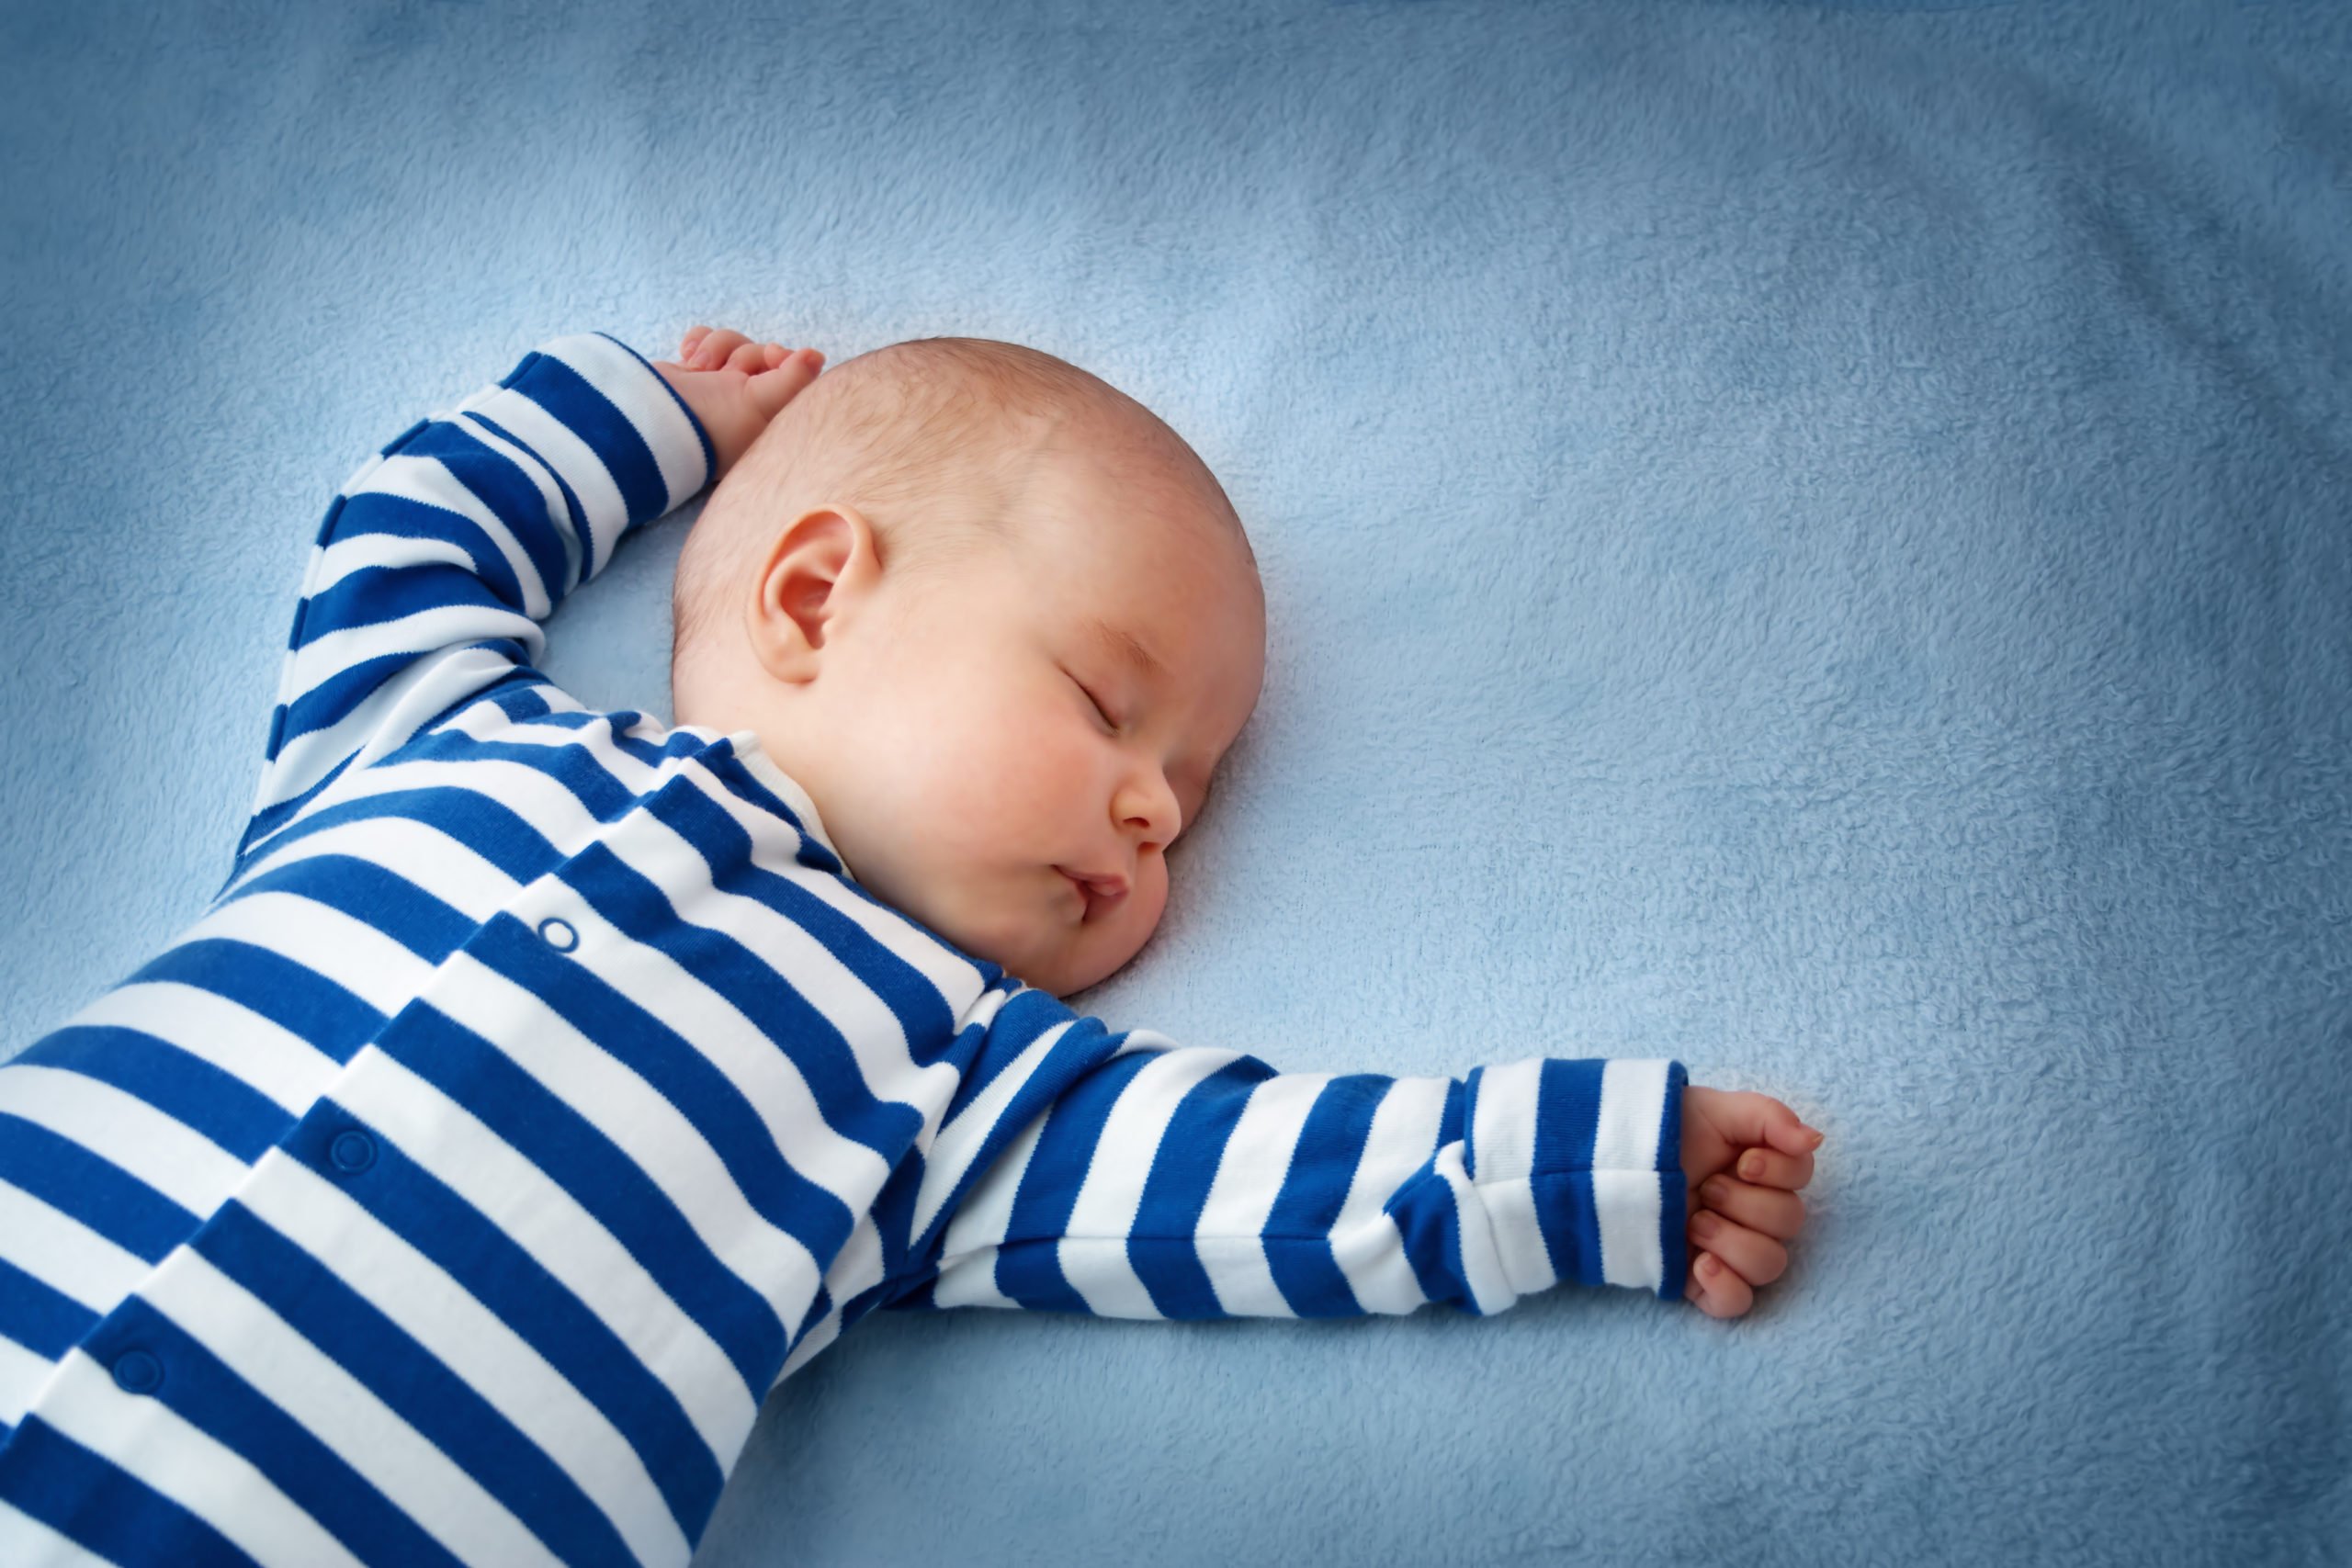 المشعاع كرس مريح  نوم الرضيع في الشهر الثالث... كل ما يجب ان تعرفينه عن هذا الموضوع